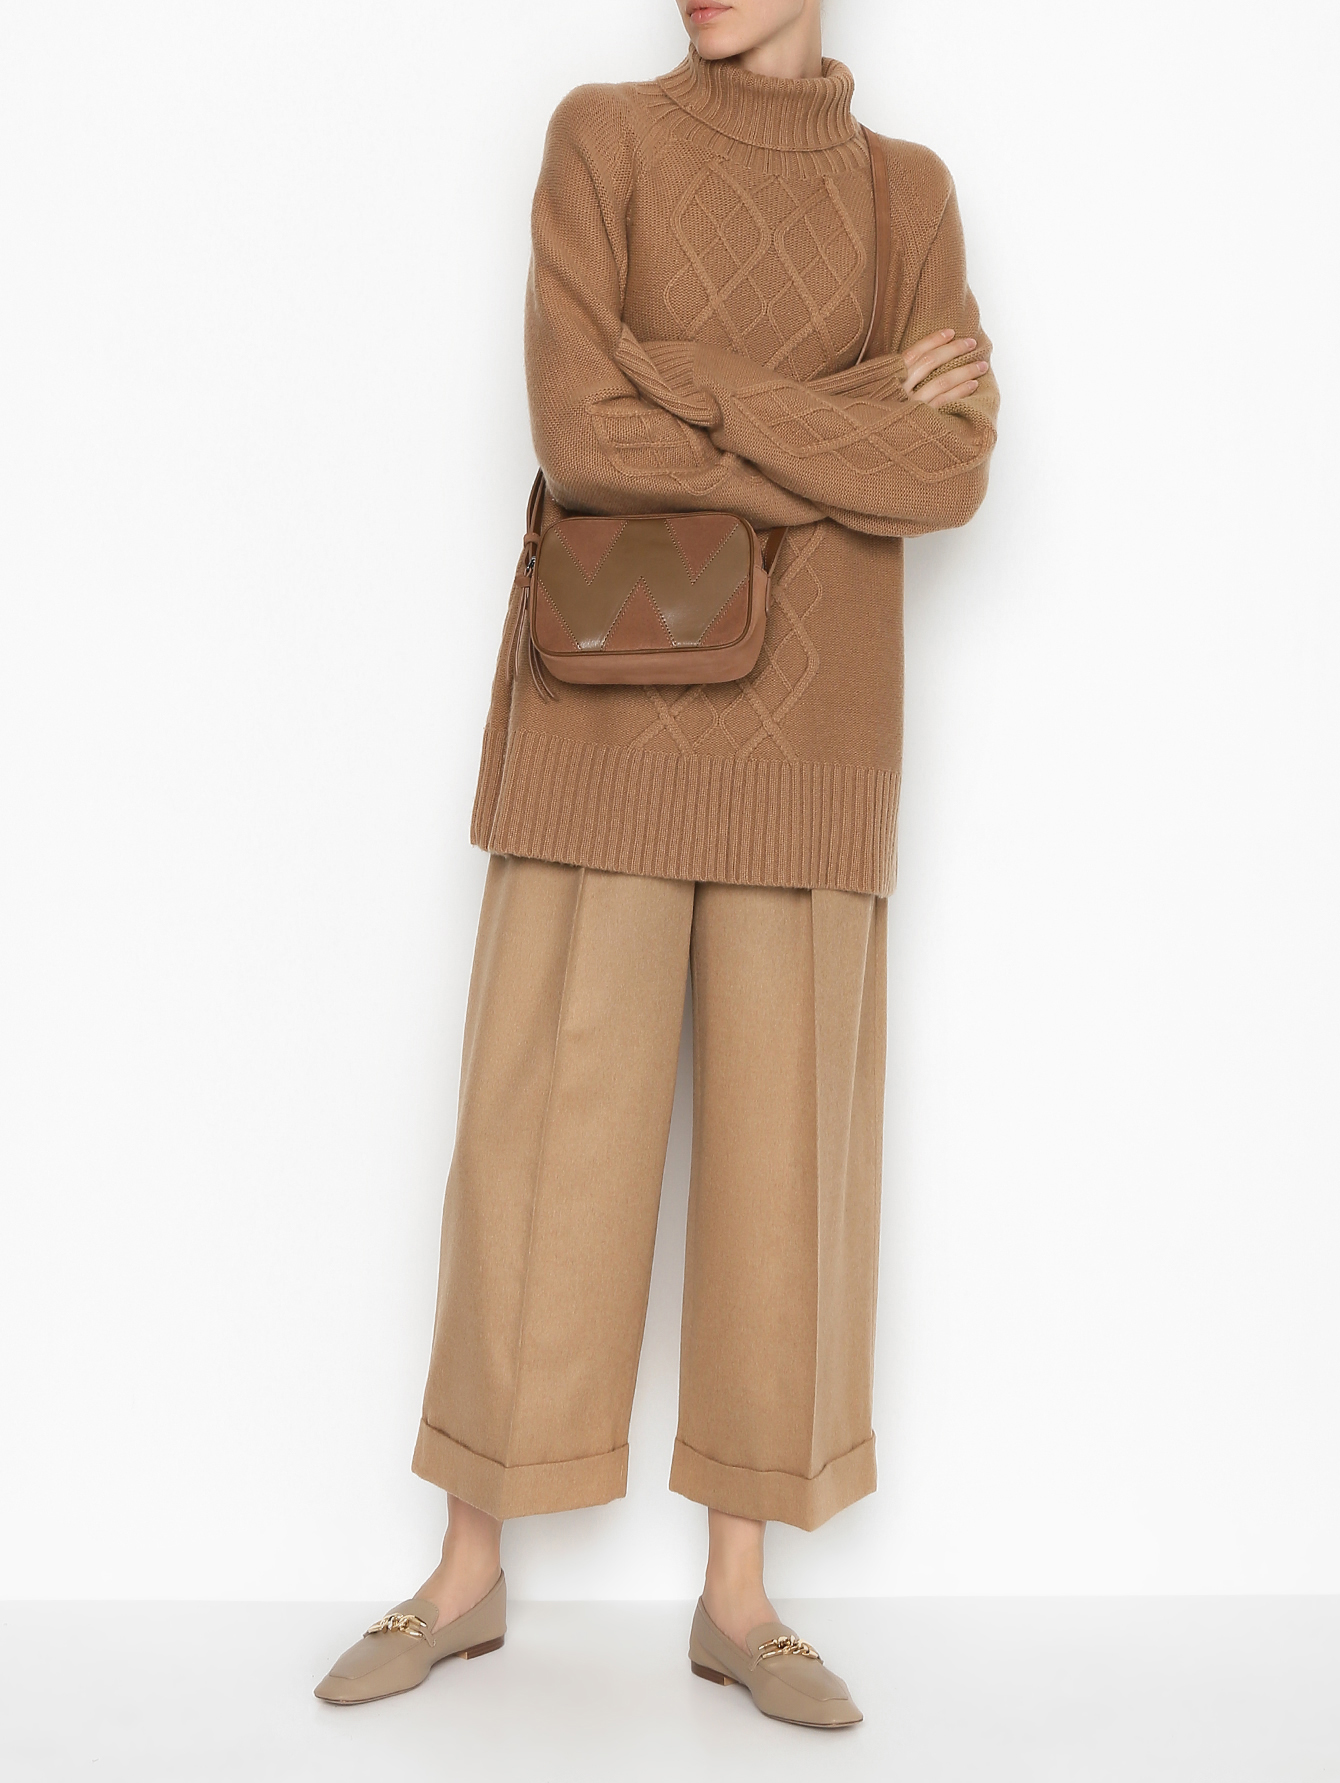 Укороченные брюки из верблюжьей шерсти Max Mara бежевые (594010) купить поцене 69 250 руб. в интернет-магазине ГУМ